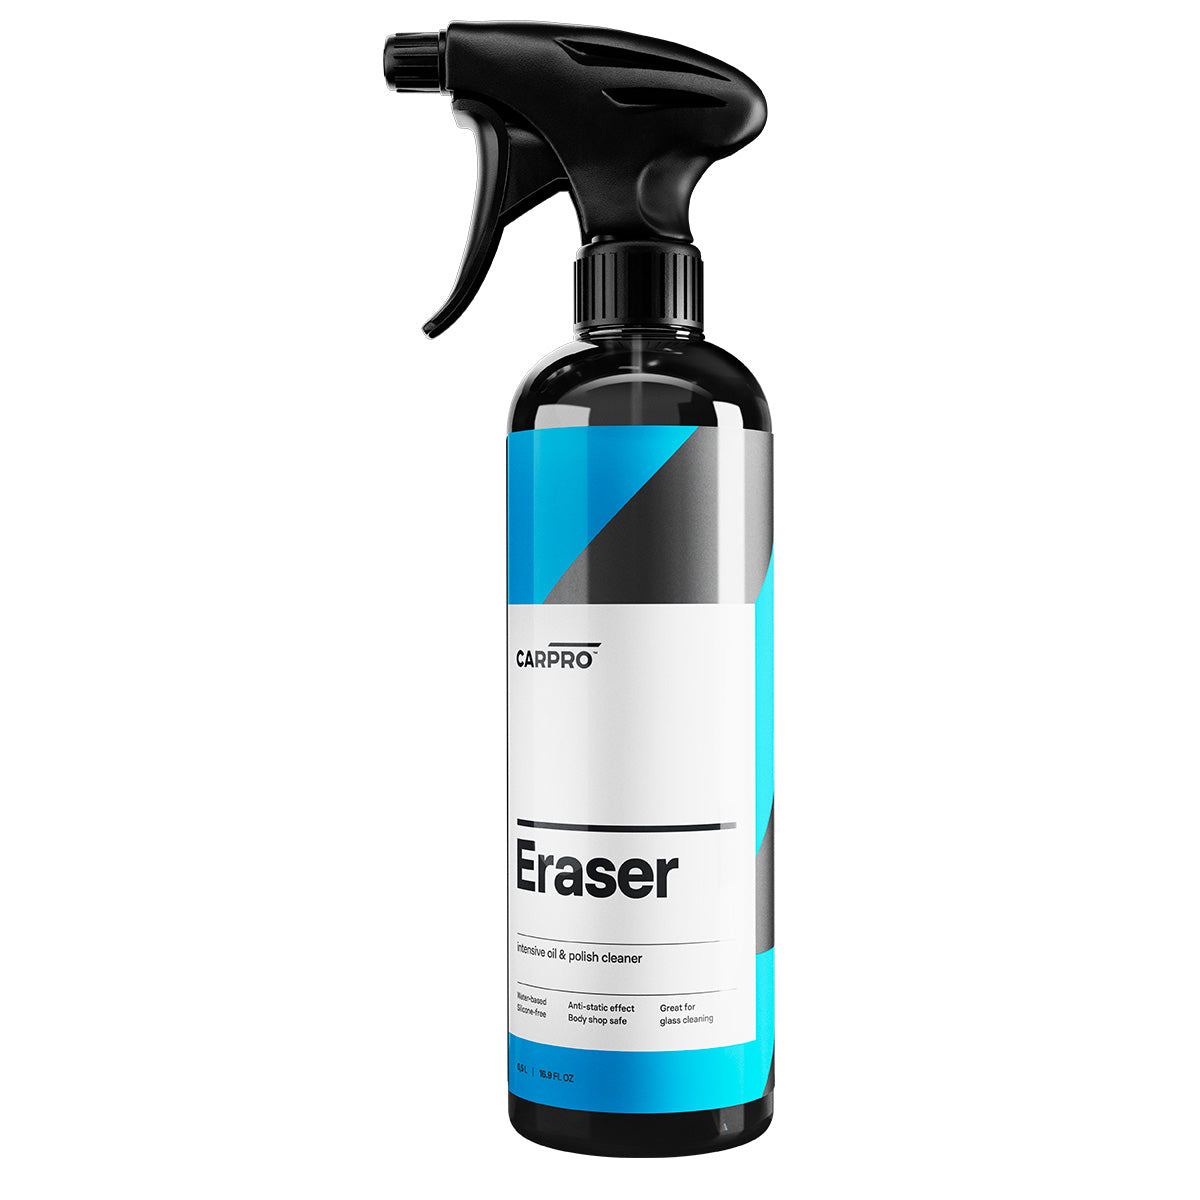 CarPro Eraser - Preparatore Alcolico Antistatico